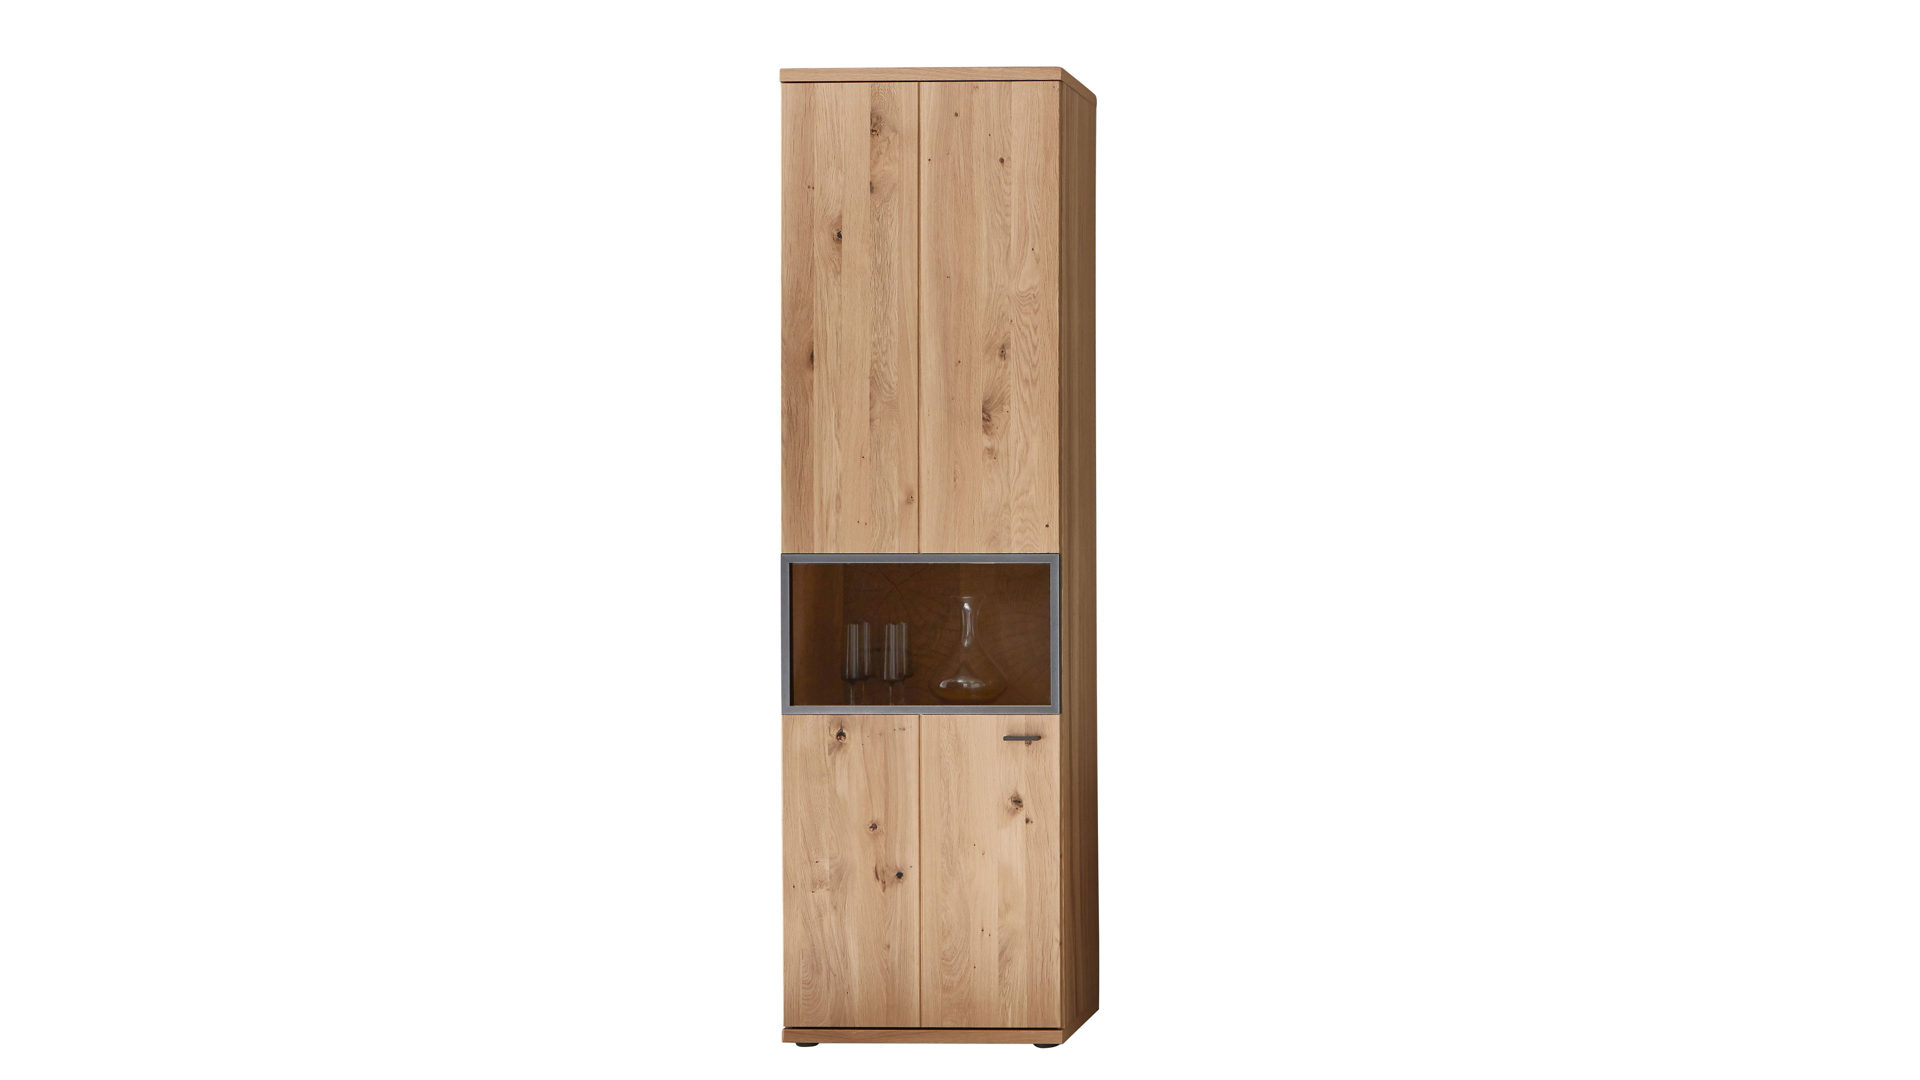 Vitrine Ideal möbel aus Holz in Holzfarben Wohnprogramm Flora - Vitrine Alteiche Bianco – Höhe ca. 209 cm